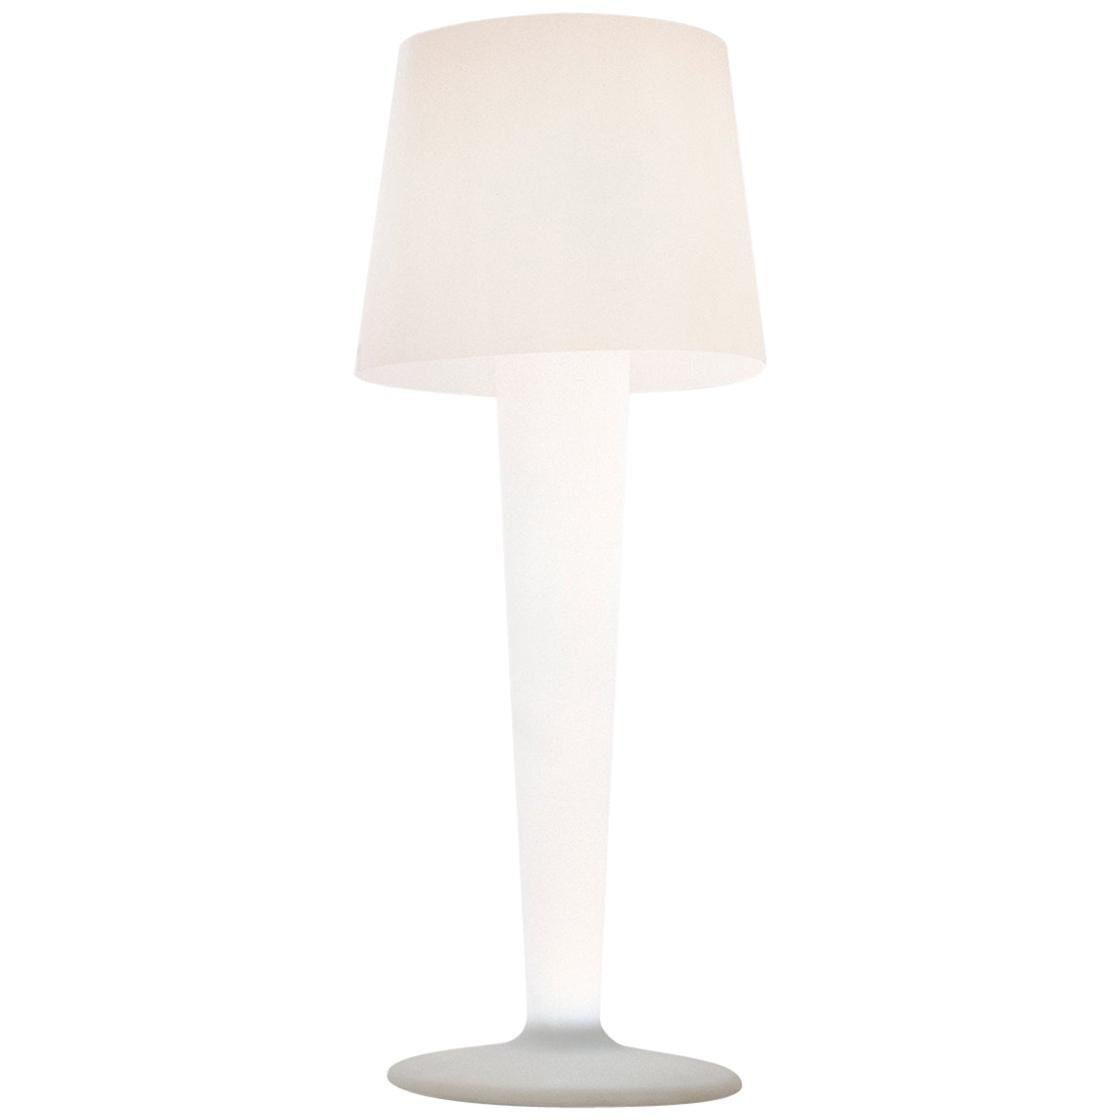 Bonaldo XXLight Lamp in Matte White by D'urbino and Lomazzi For Sale